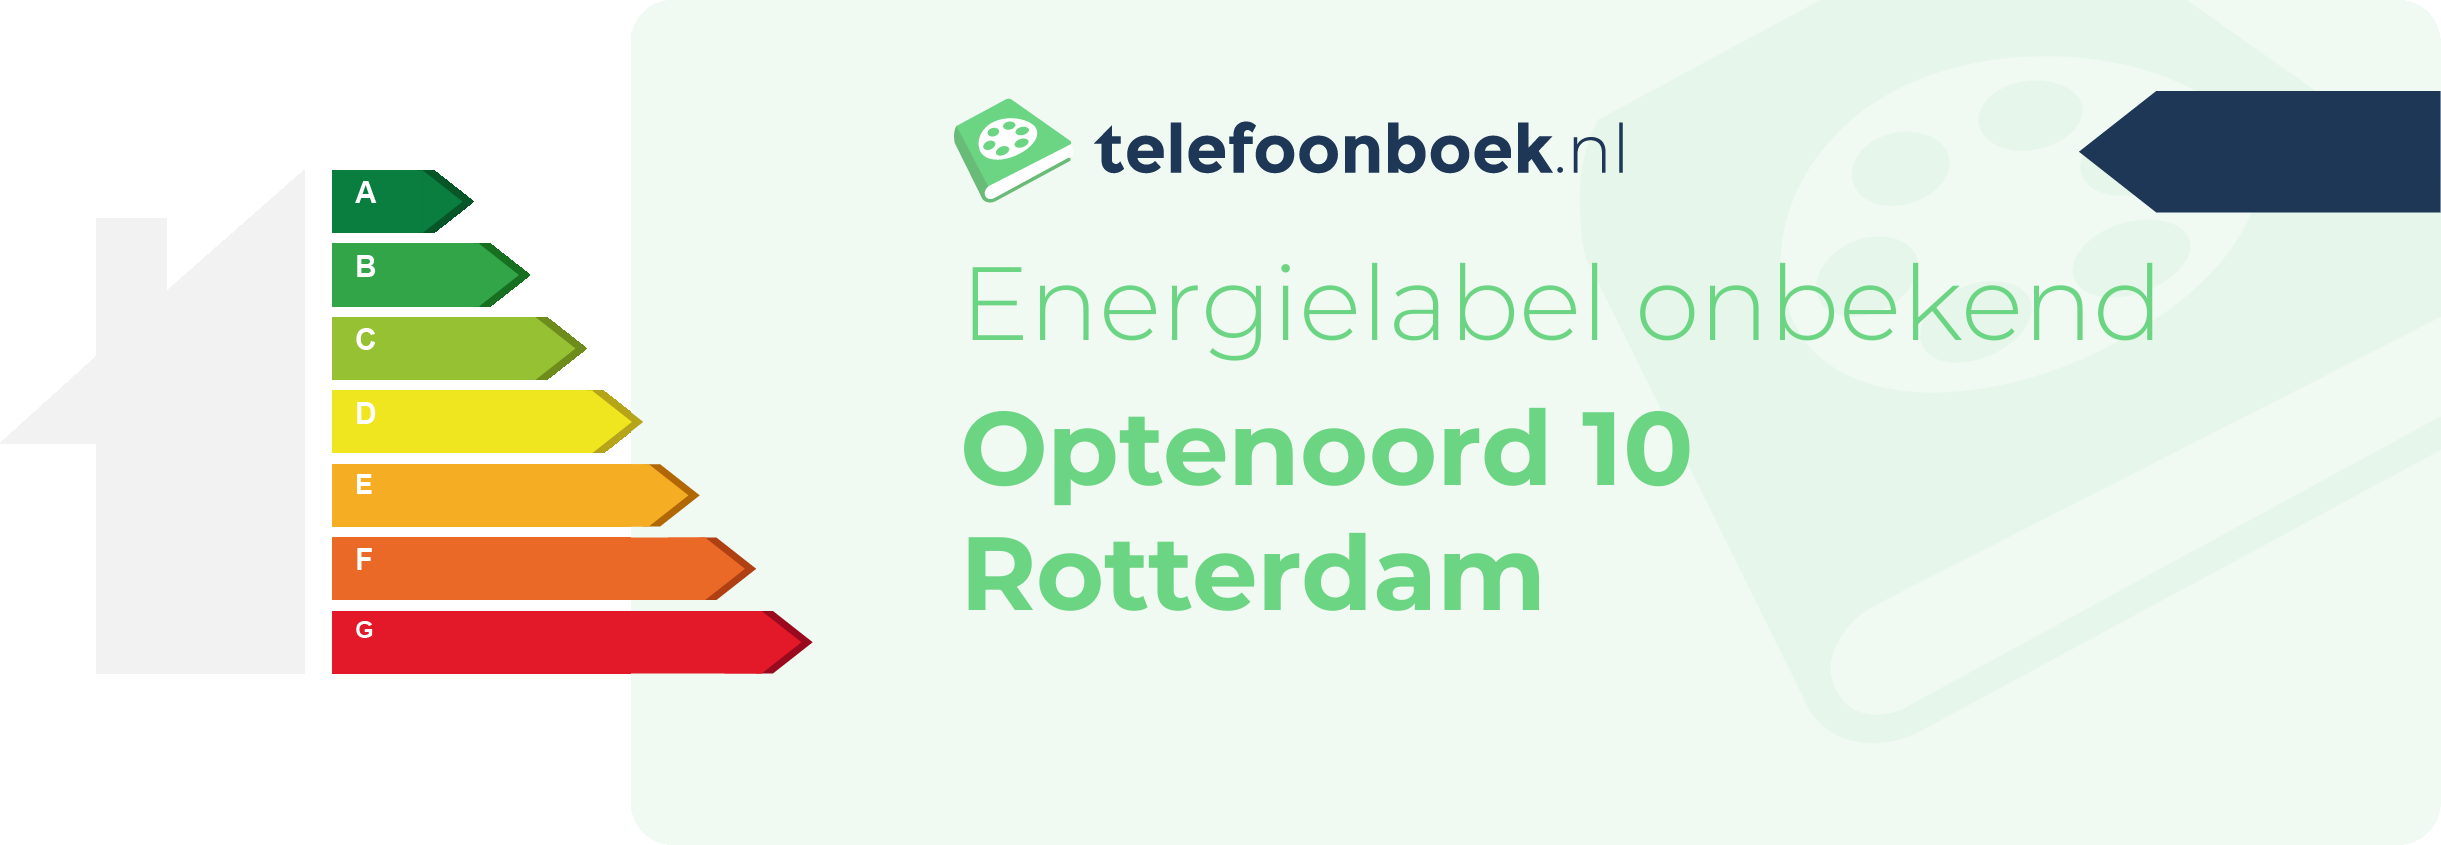 Energielabel Optenoord 10 Rotterdam